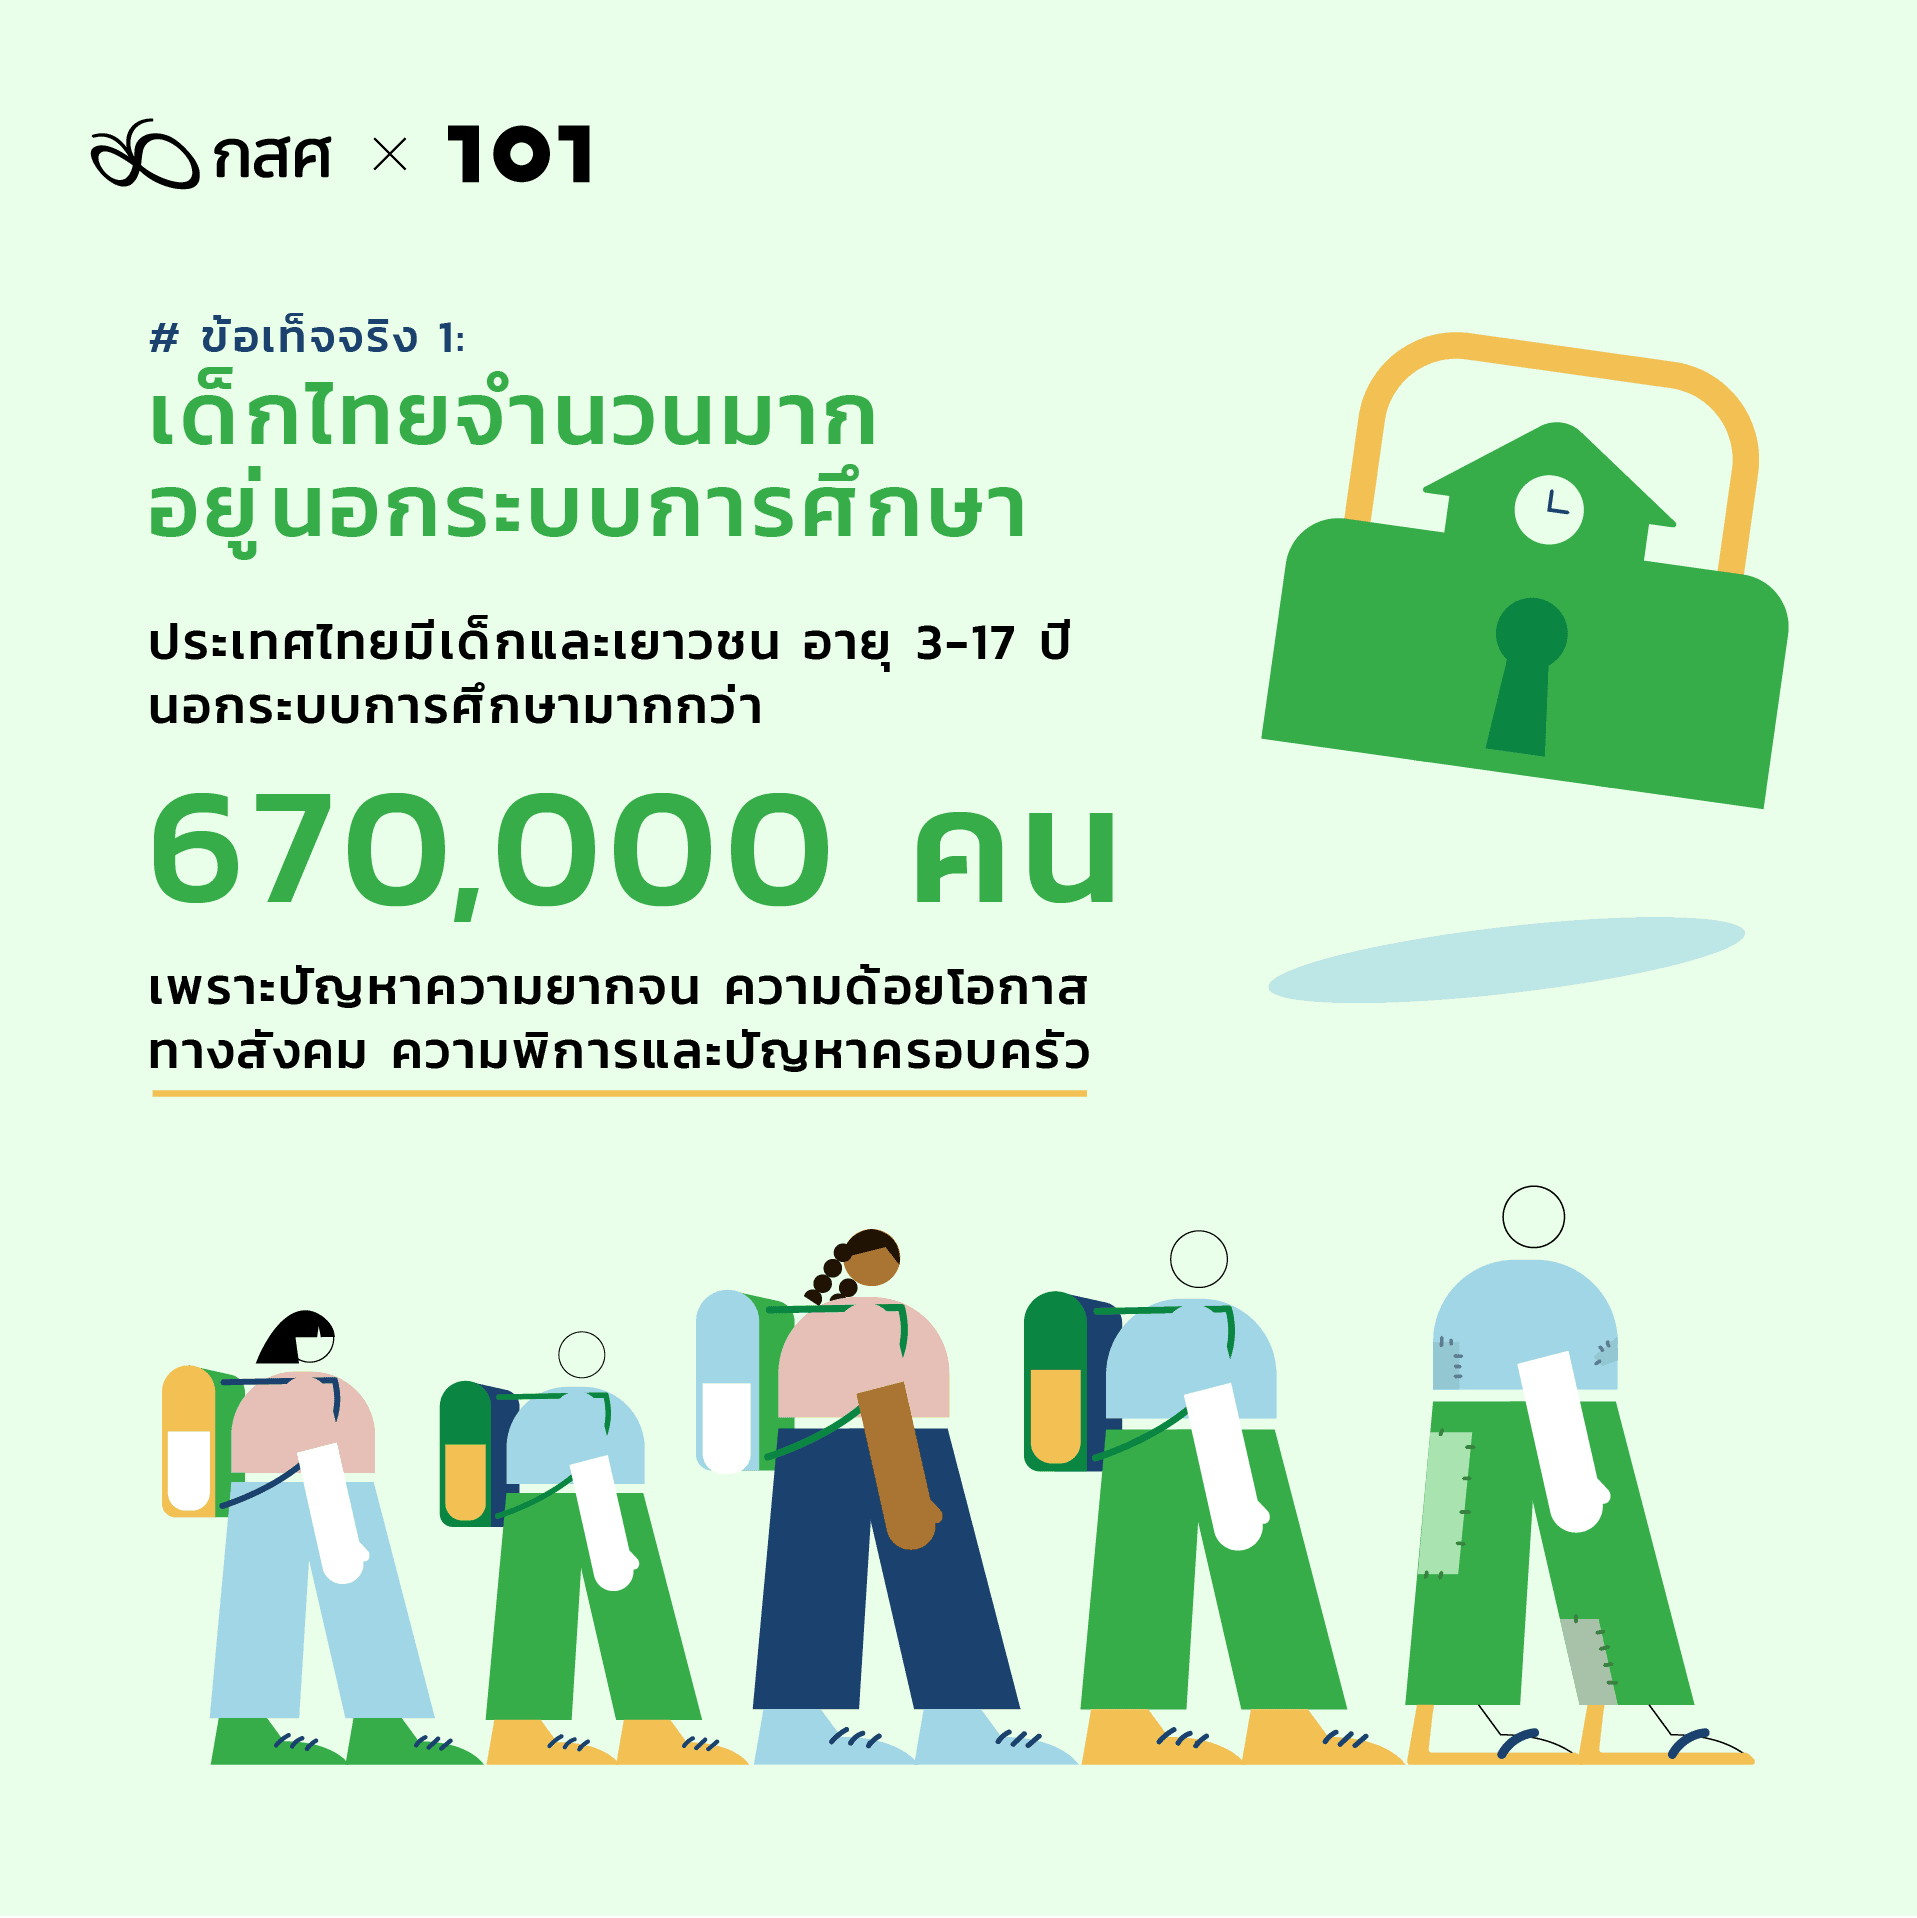 สำรวจความเหลื่อมล้ำการศึกษาไทย เพิ่มโอกาสให้เด็กยากจน: ข้อเท็จจริง 1: เด็กไทยจำนวนมากอยู่นอกระบบการศึกษา